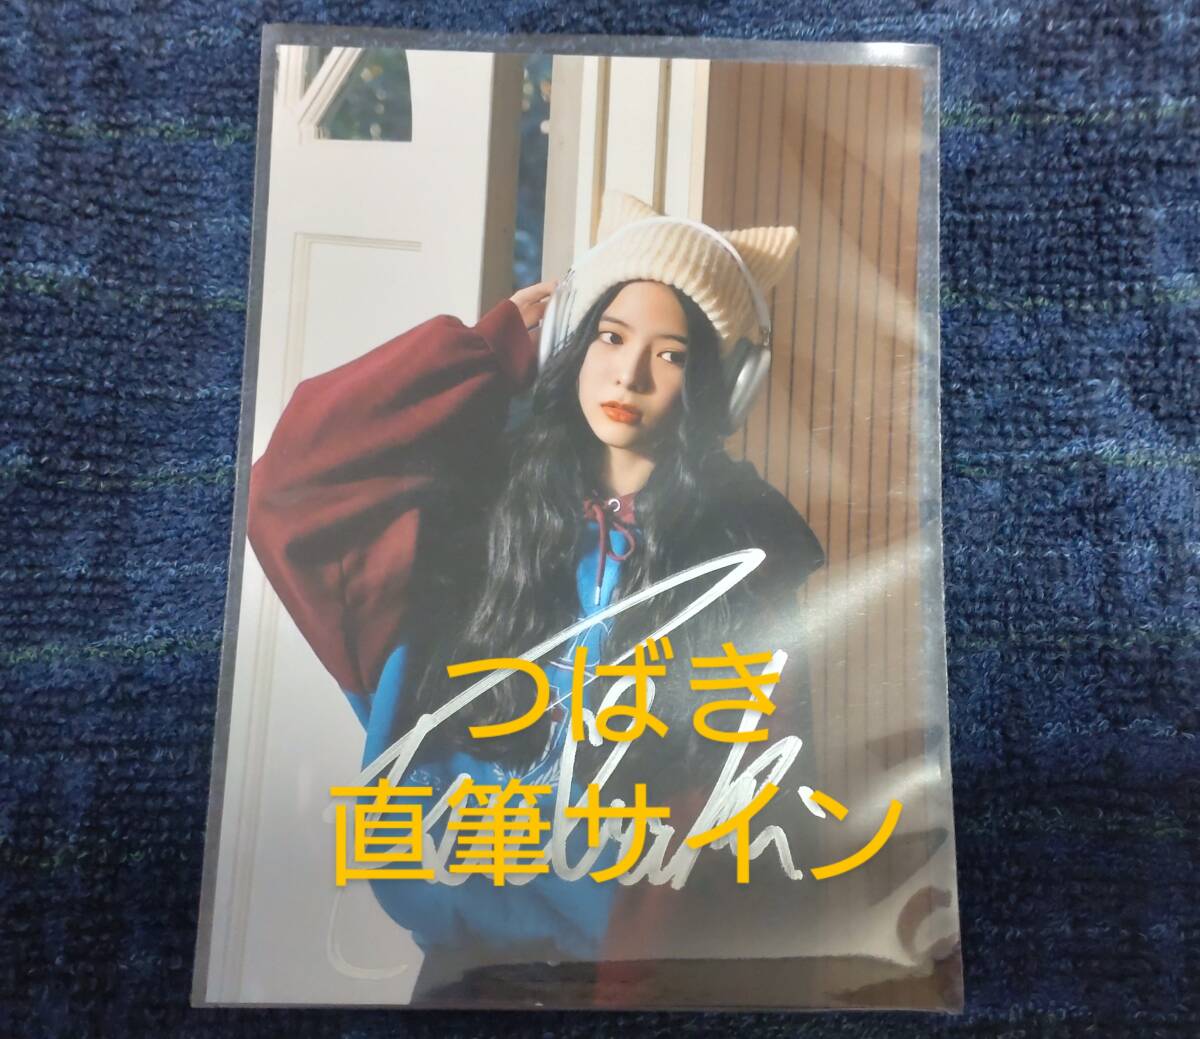 [नवीनता बिक्री के लिए नहीं] त्सुबाकी नागायामा द्वारा हस्ताक्षरित लकी2 ऑलवेज ऑलवेज प्रीमियम फोटो, प्रतिभा का माल, फोटो